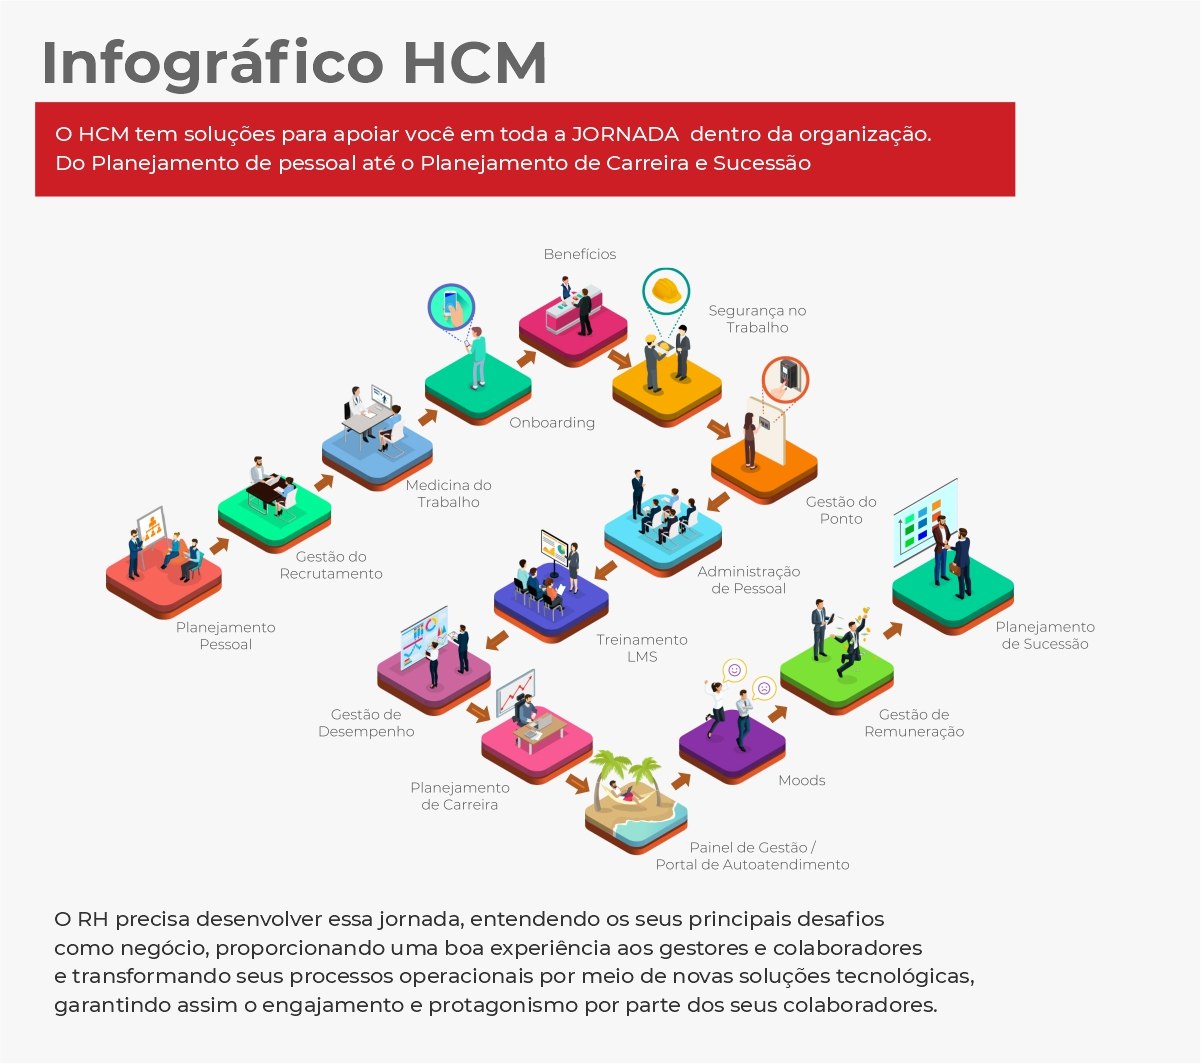 O que é HCM - Infográfico HCM